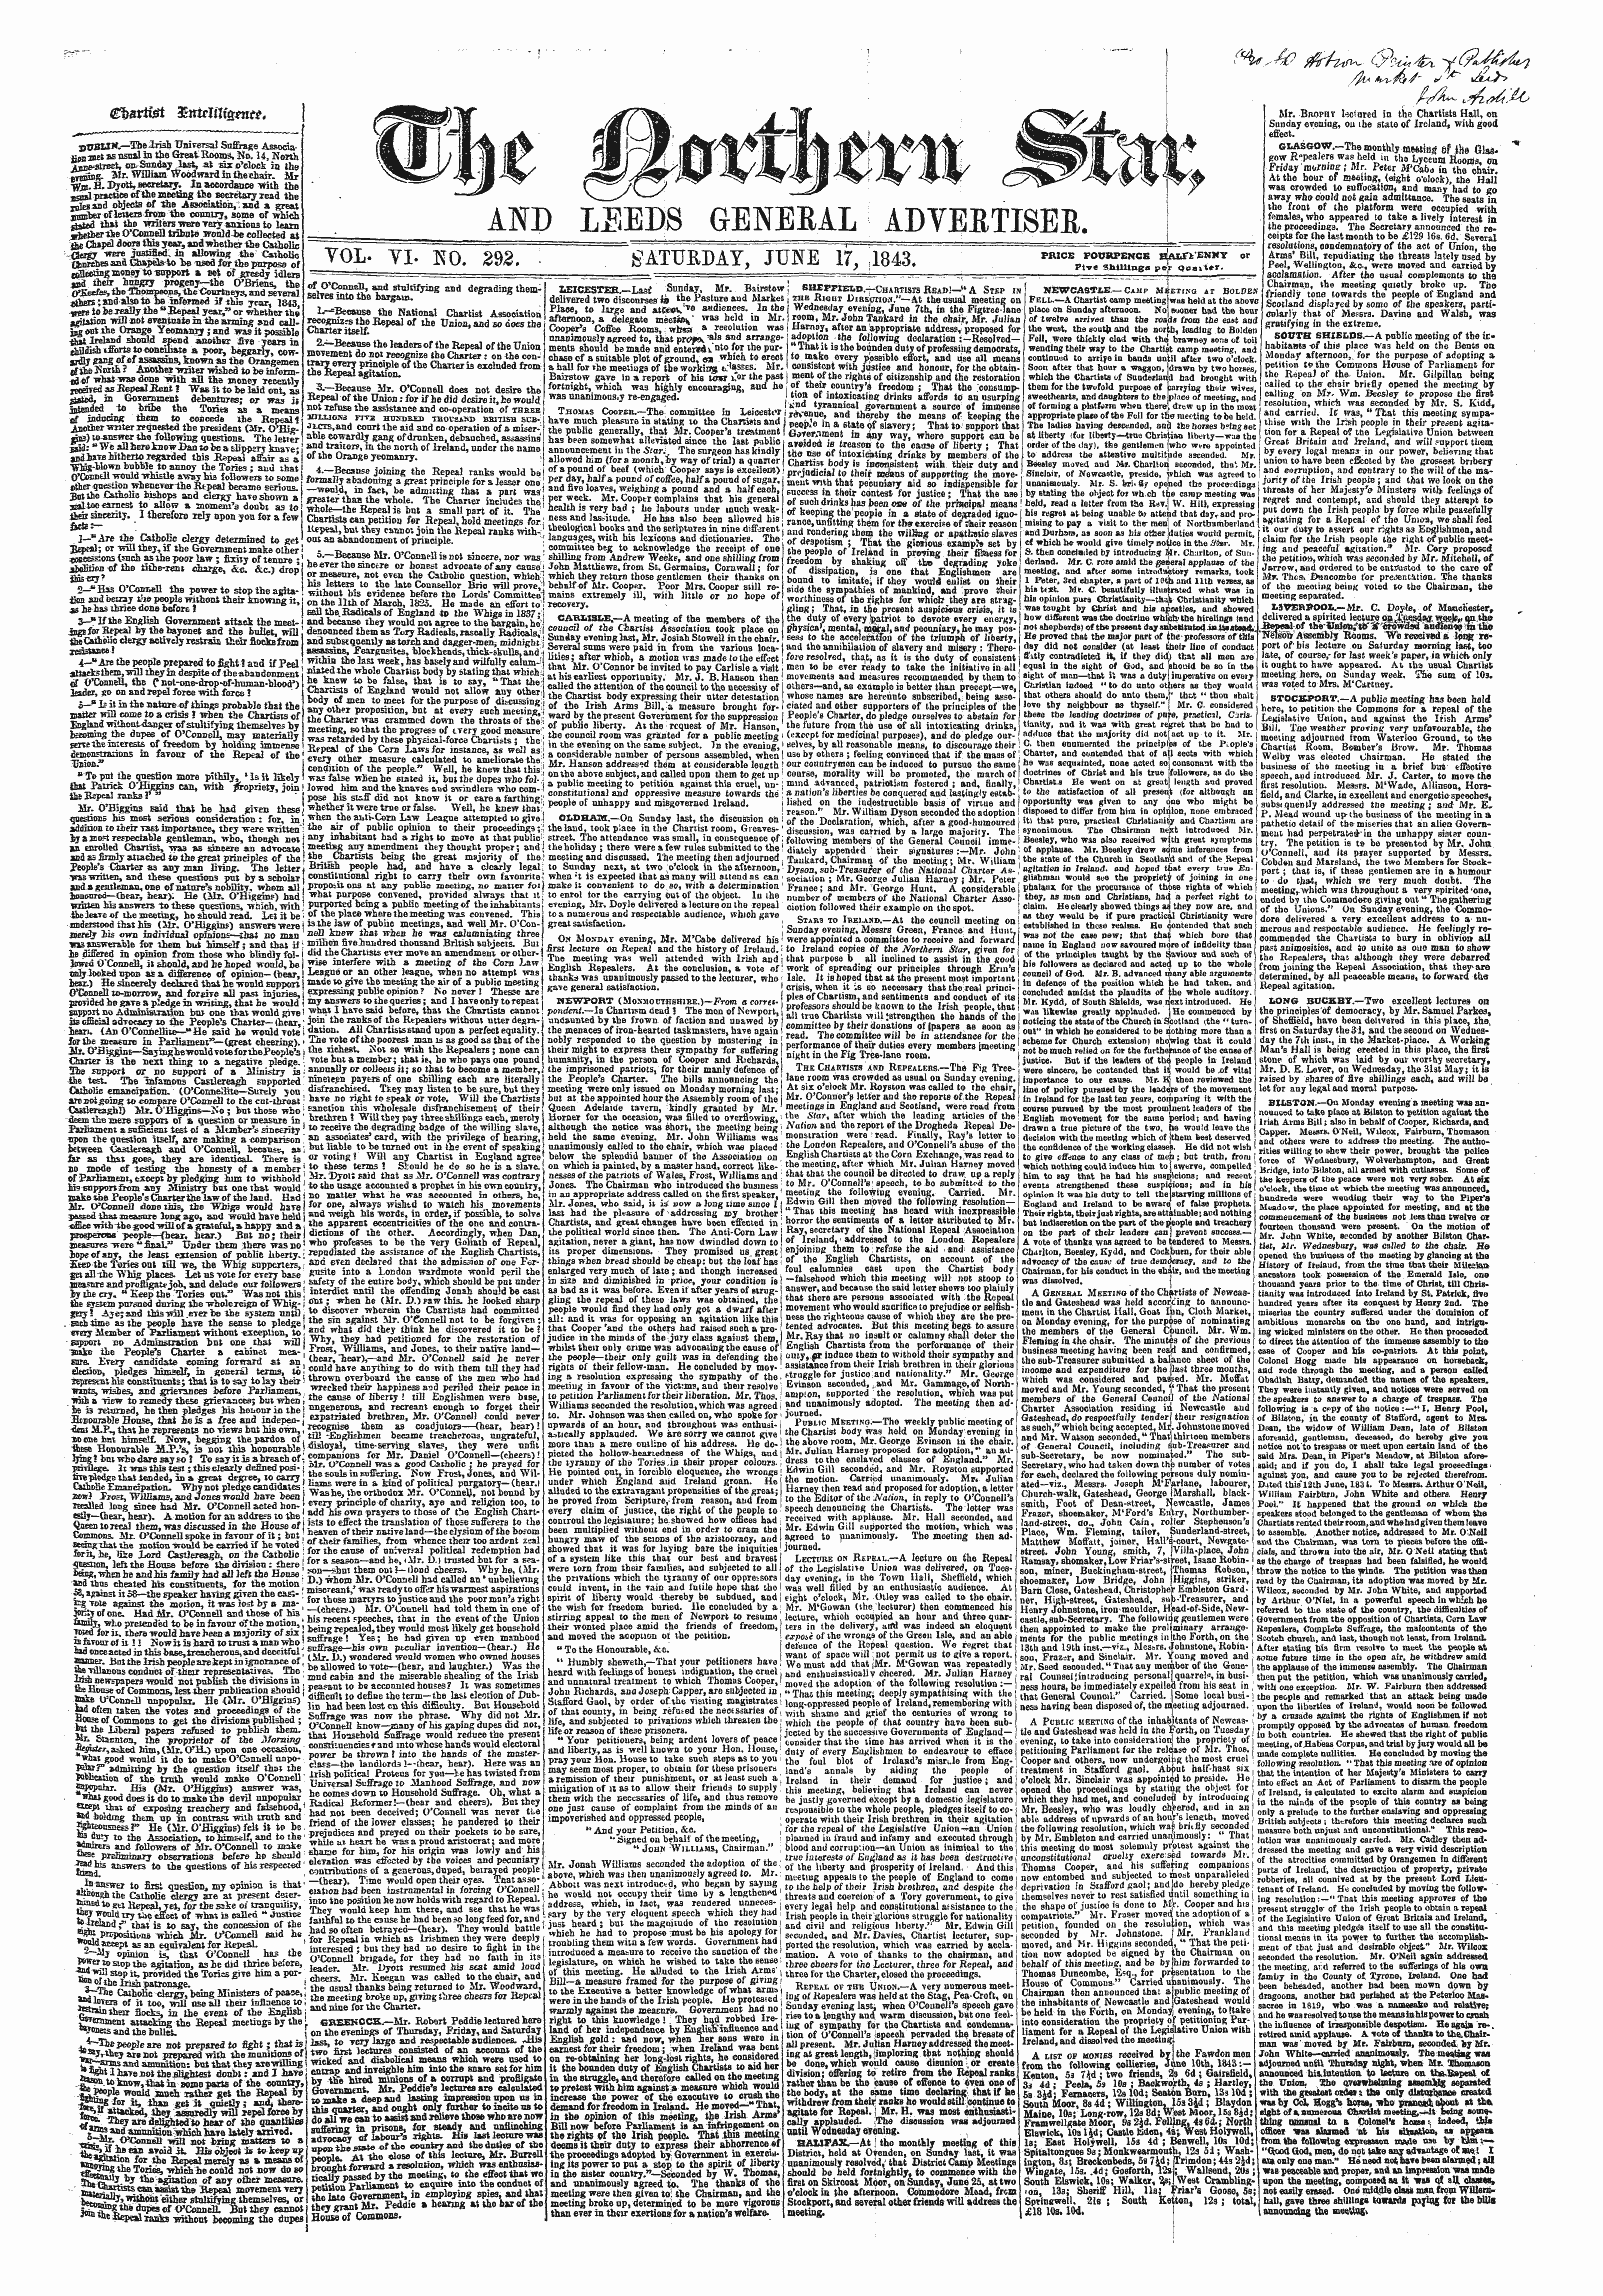 Northern Star (1837-1852): jS F Y, 5th edition - £T&Gt;Sri&I 3£Ntilil\£Mtt.